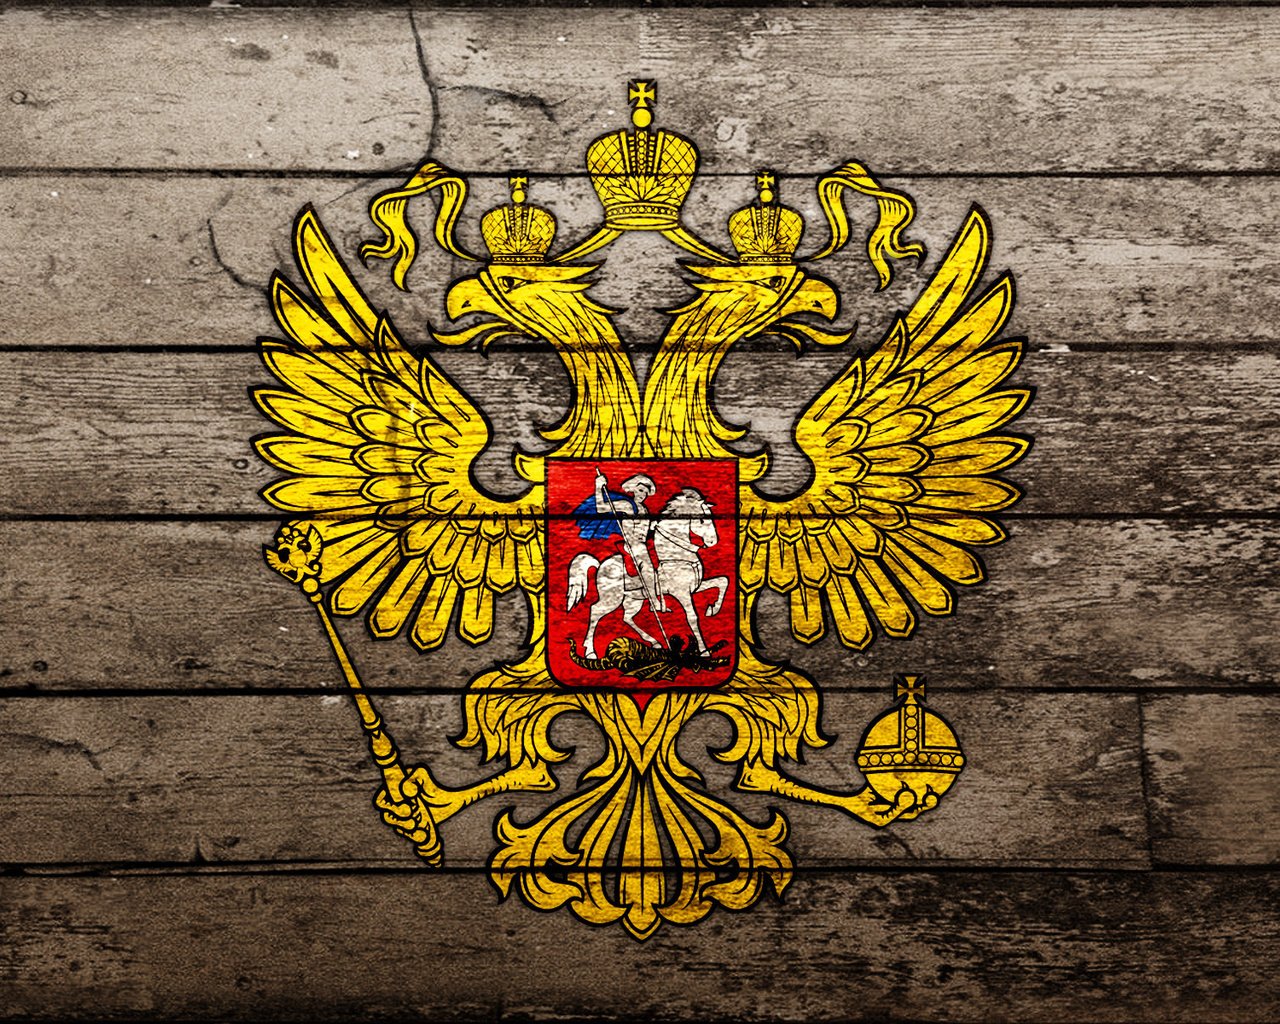 Флаг Российской империи бесплатно